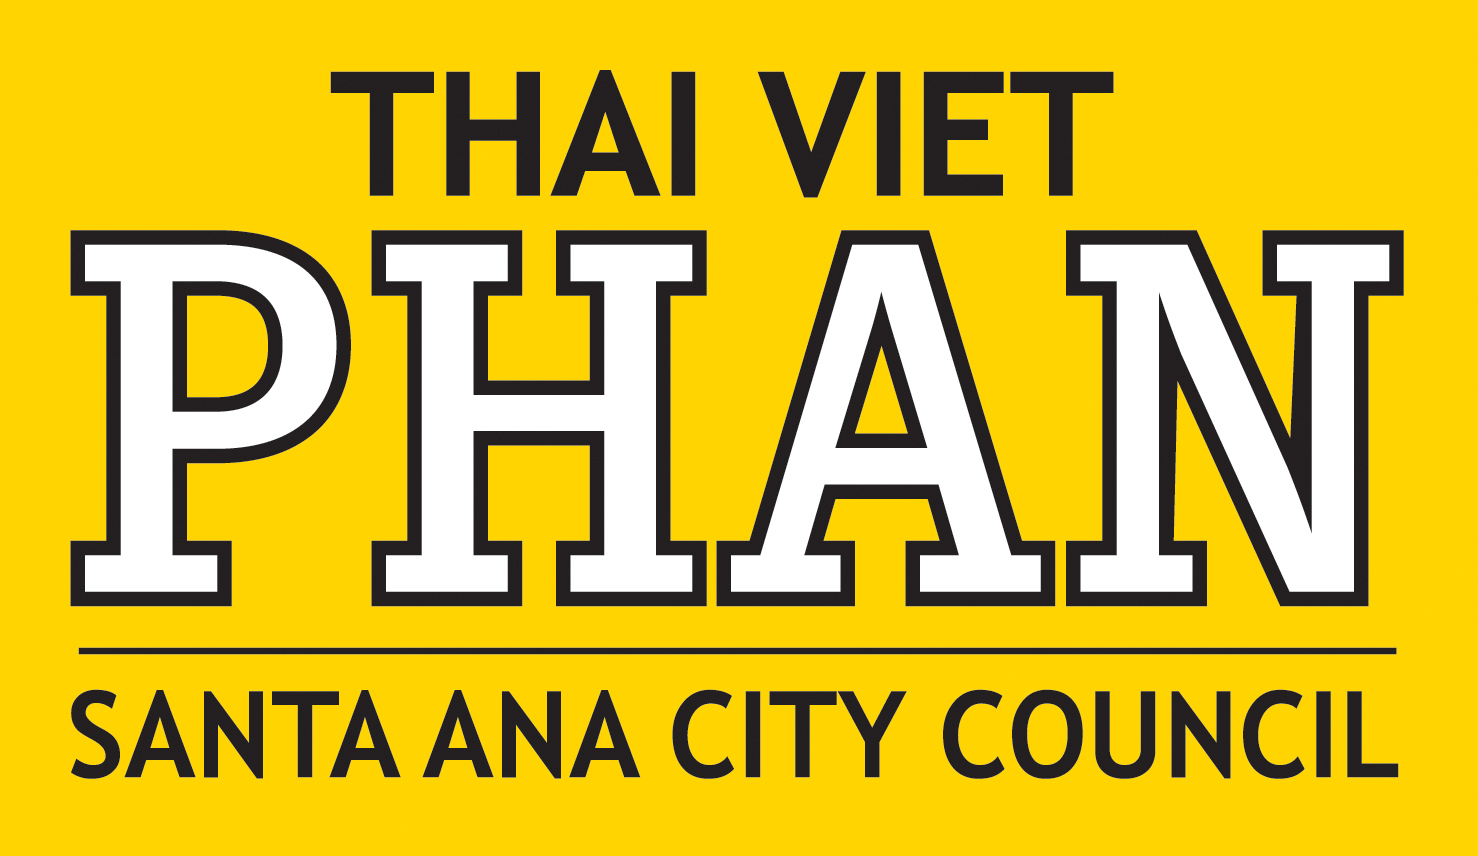 Thai Viet Phan for Santa Ana City Council